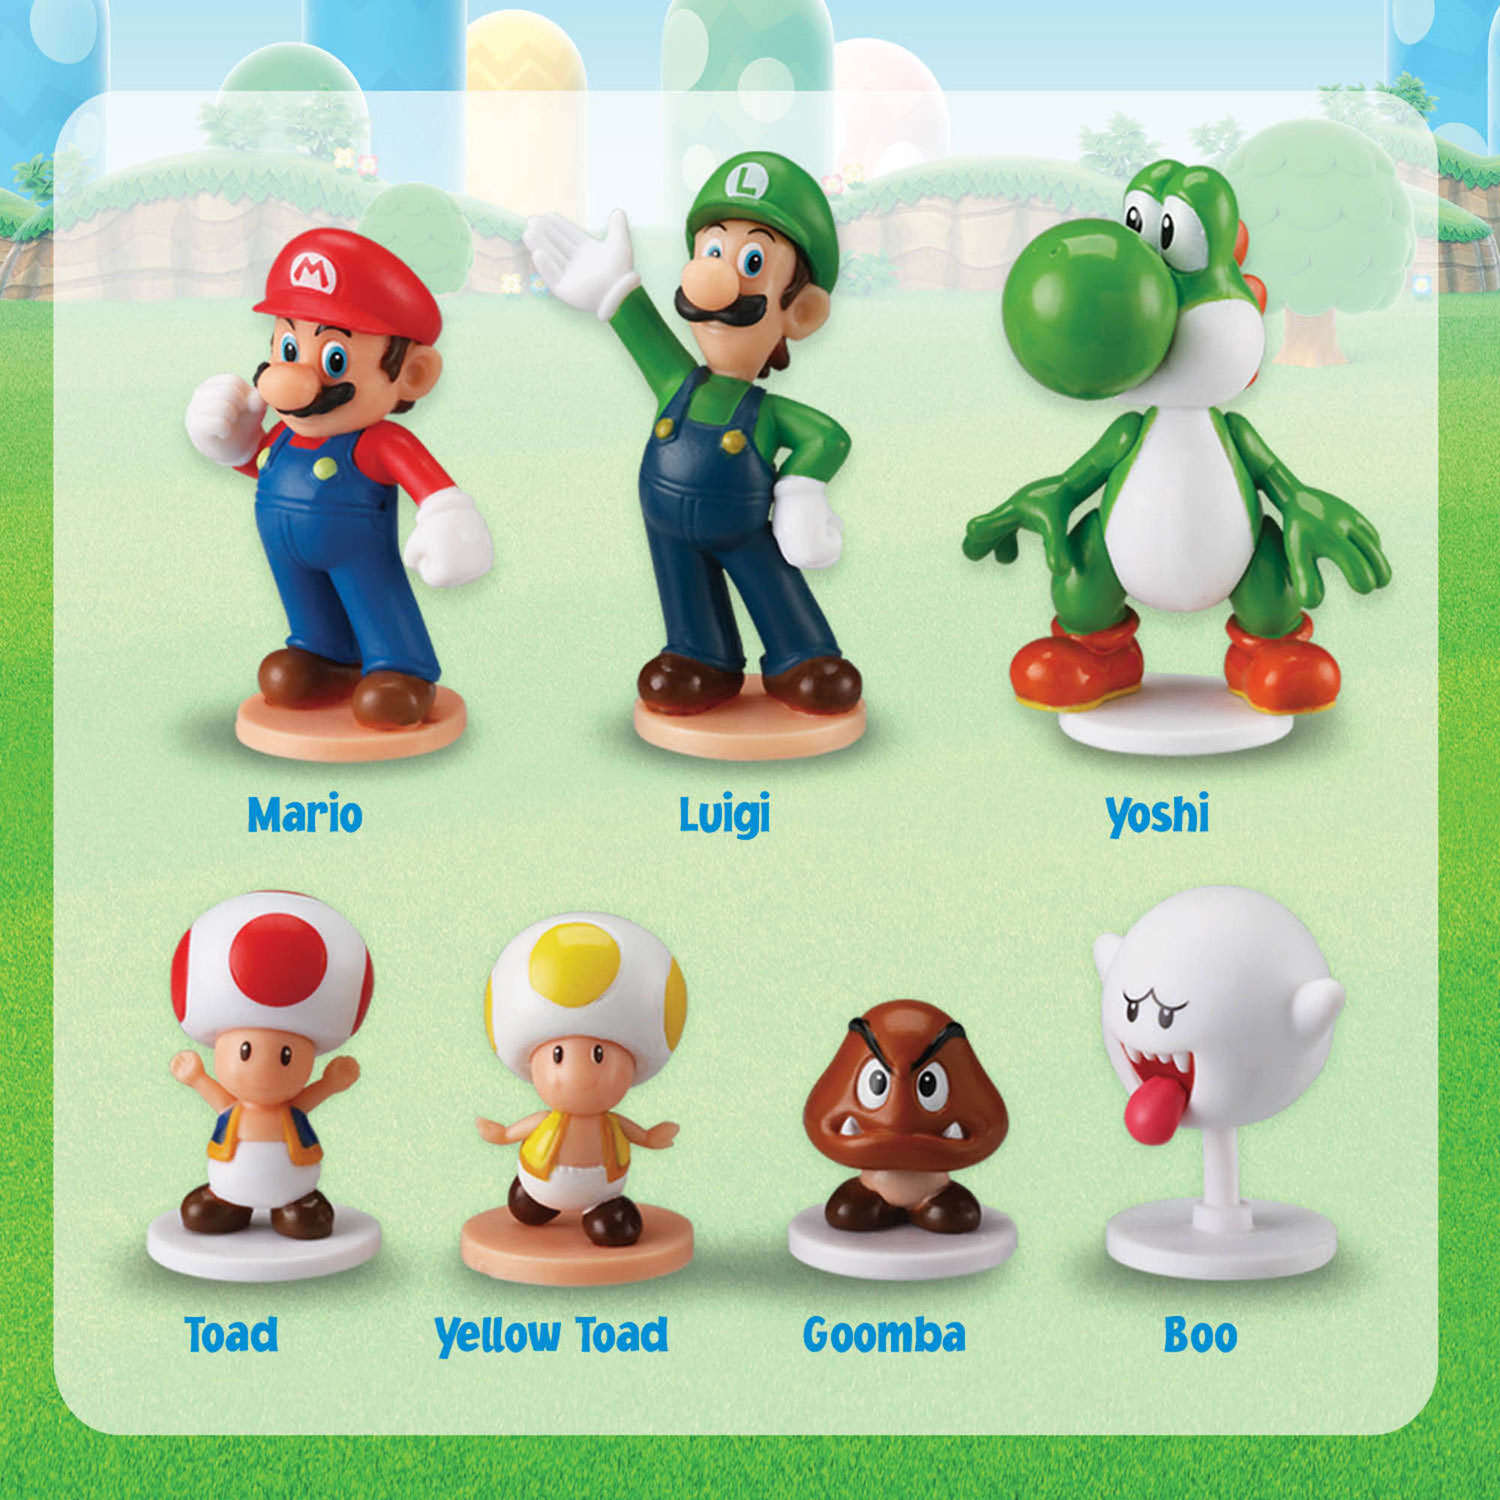 Les meilleurs prix aujourd'hui pour Uno: Super Mario - TableTopFinder